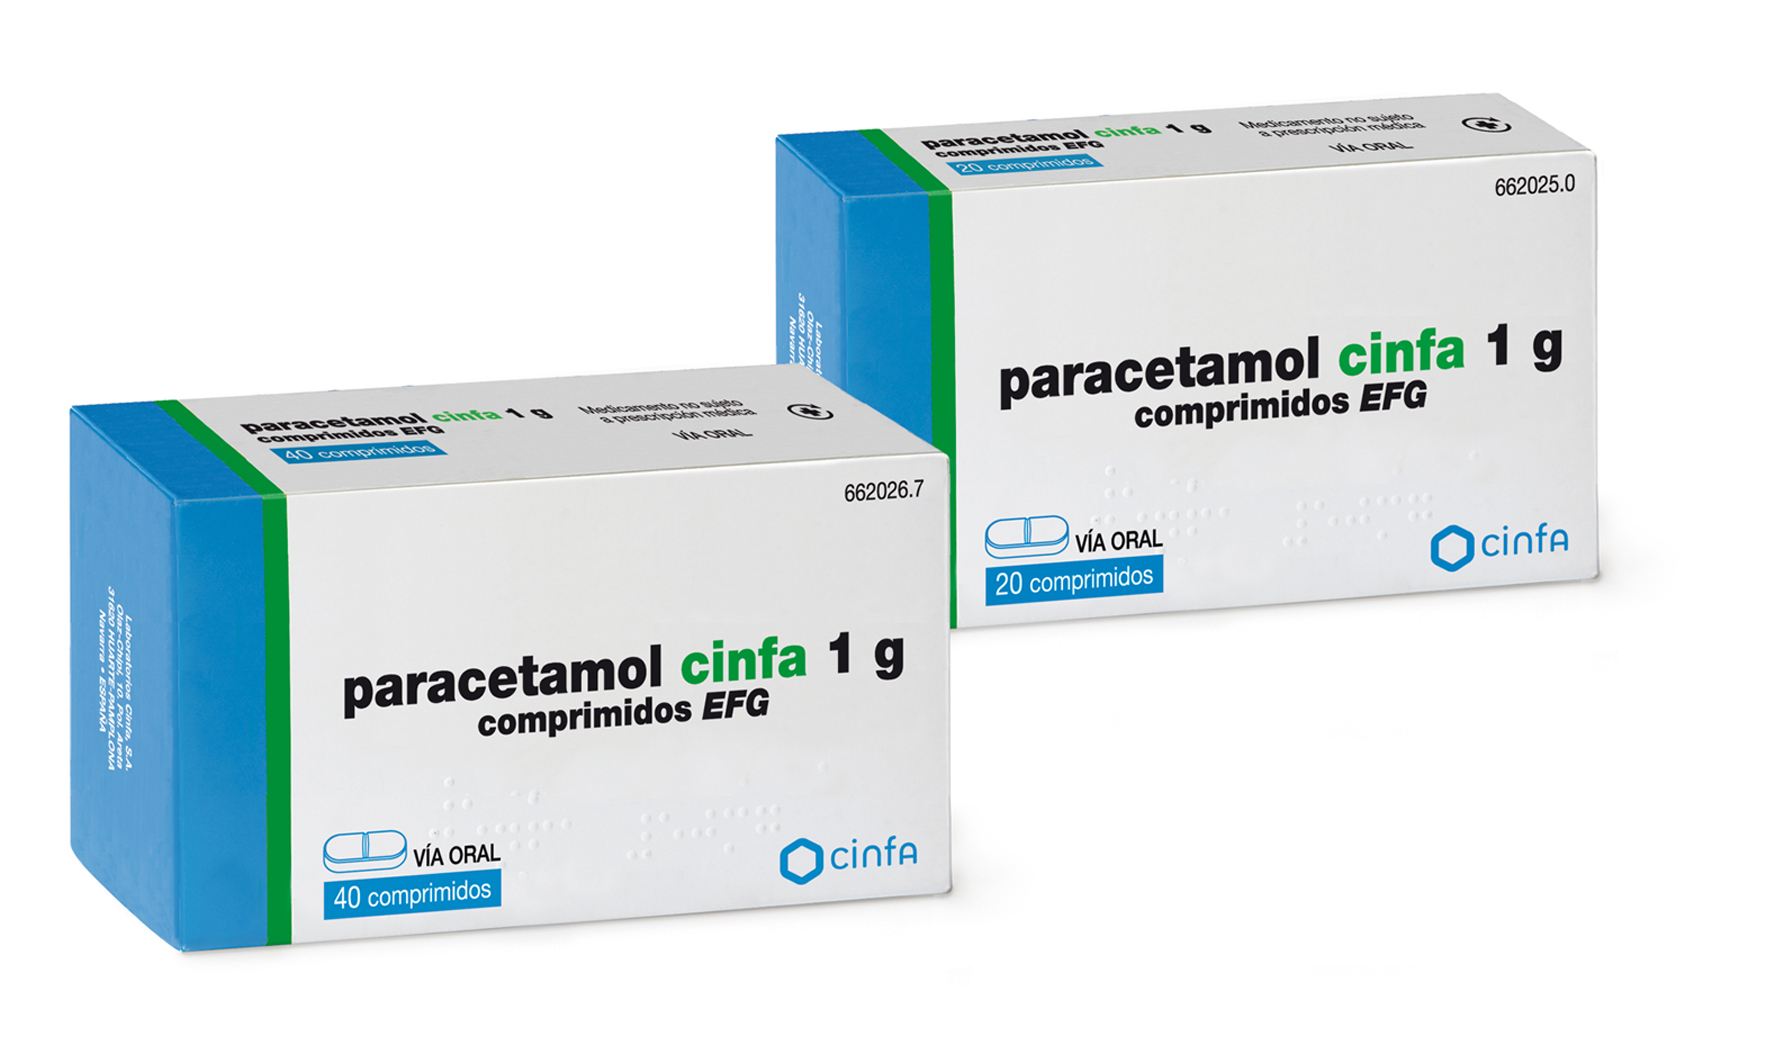 Cinfa paracetamol cinfa g. comprimidos EFG